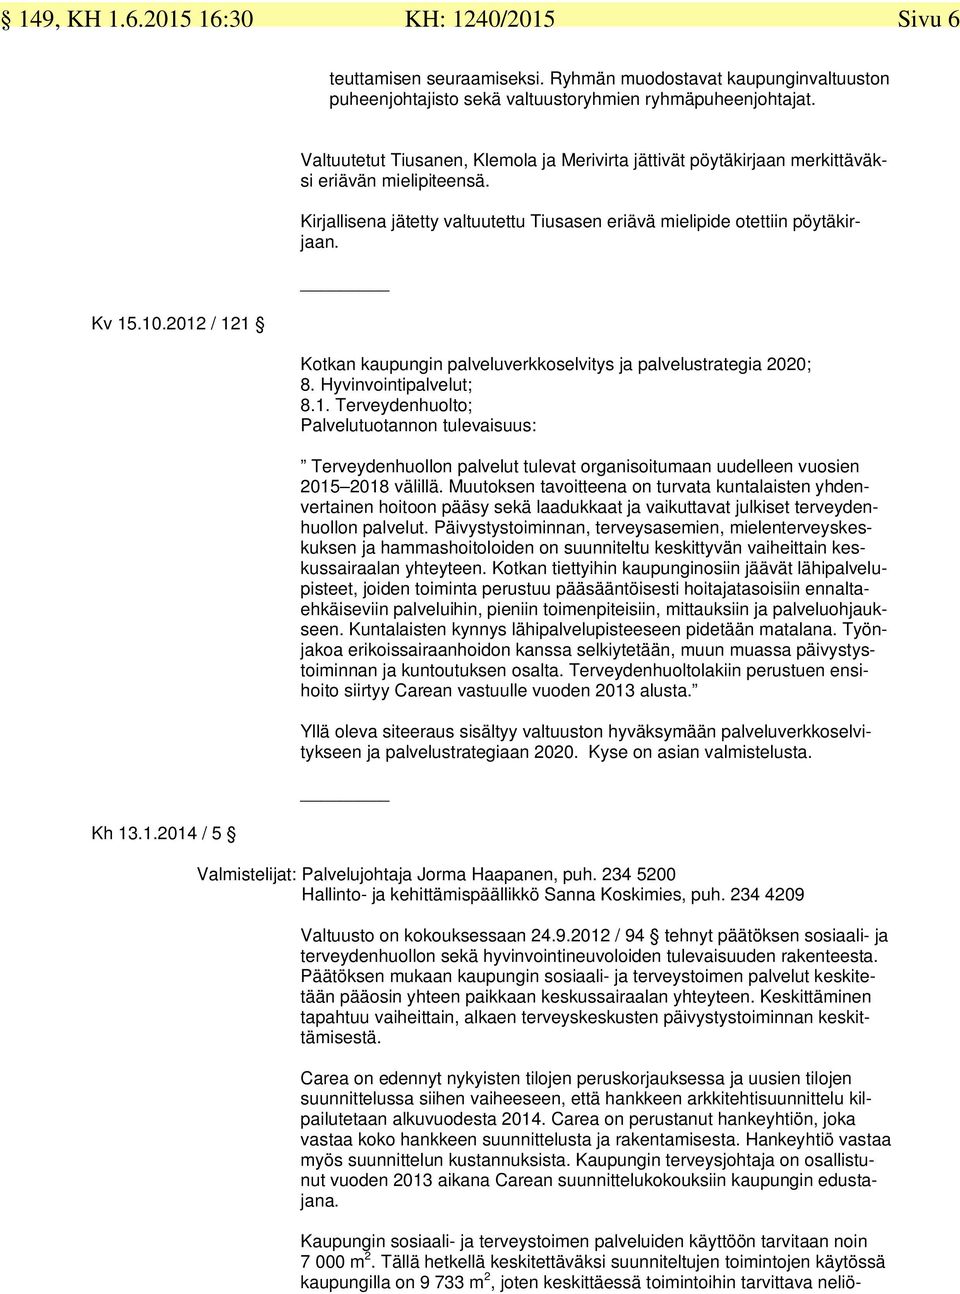 2012 / 121 Kotkan kaupungin palveluverkkoselvitys ja palvelustrategia 2020; 8. Hyvinvointipalvelut; 8.1. Terveydenhuolto; Palvelutuotannon tulevaisuus: Terveydenhuollon palvelut tulevat organisoitumaan uudelleen vuosien 2015 2018 välillä.